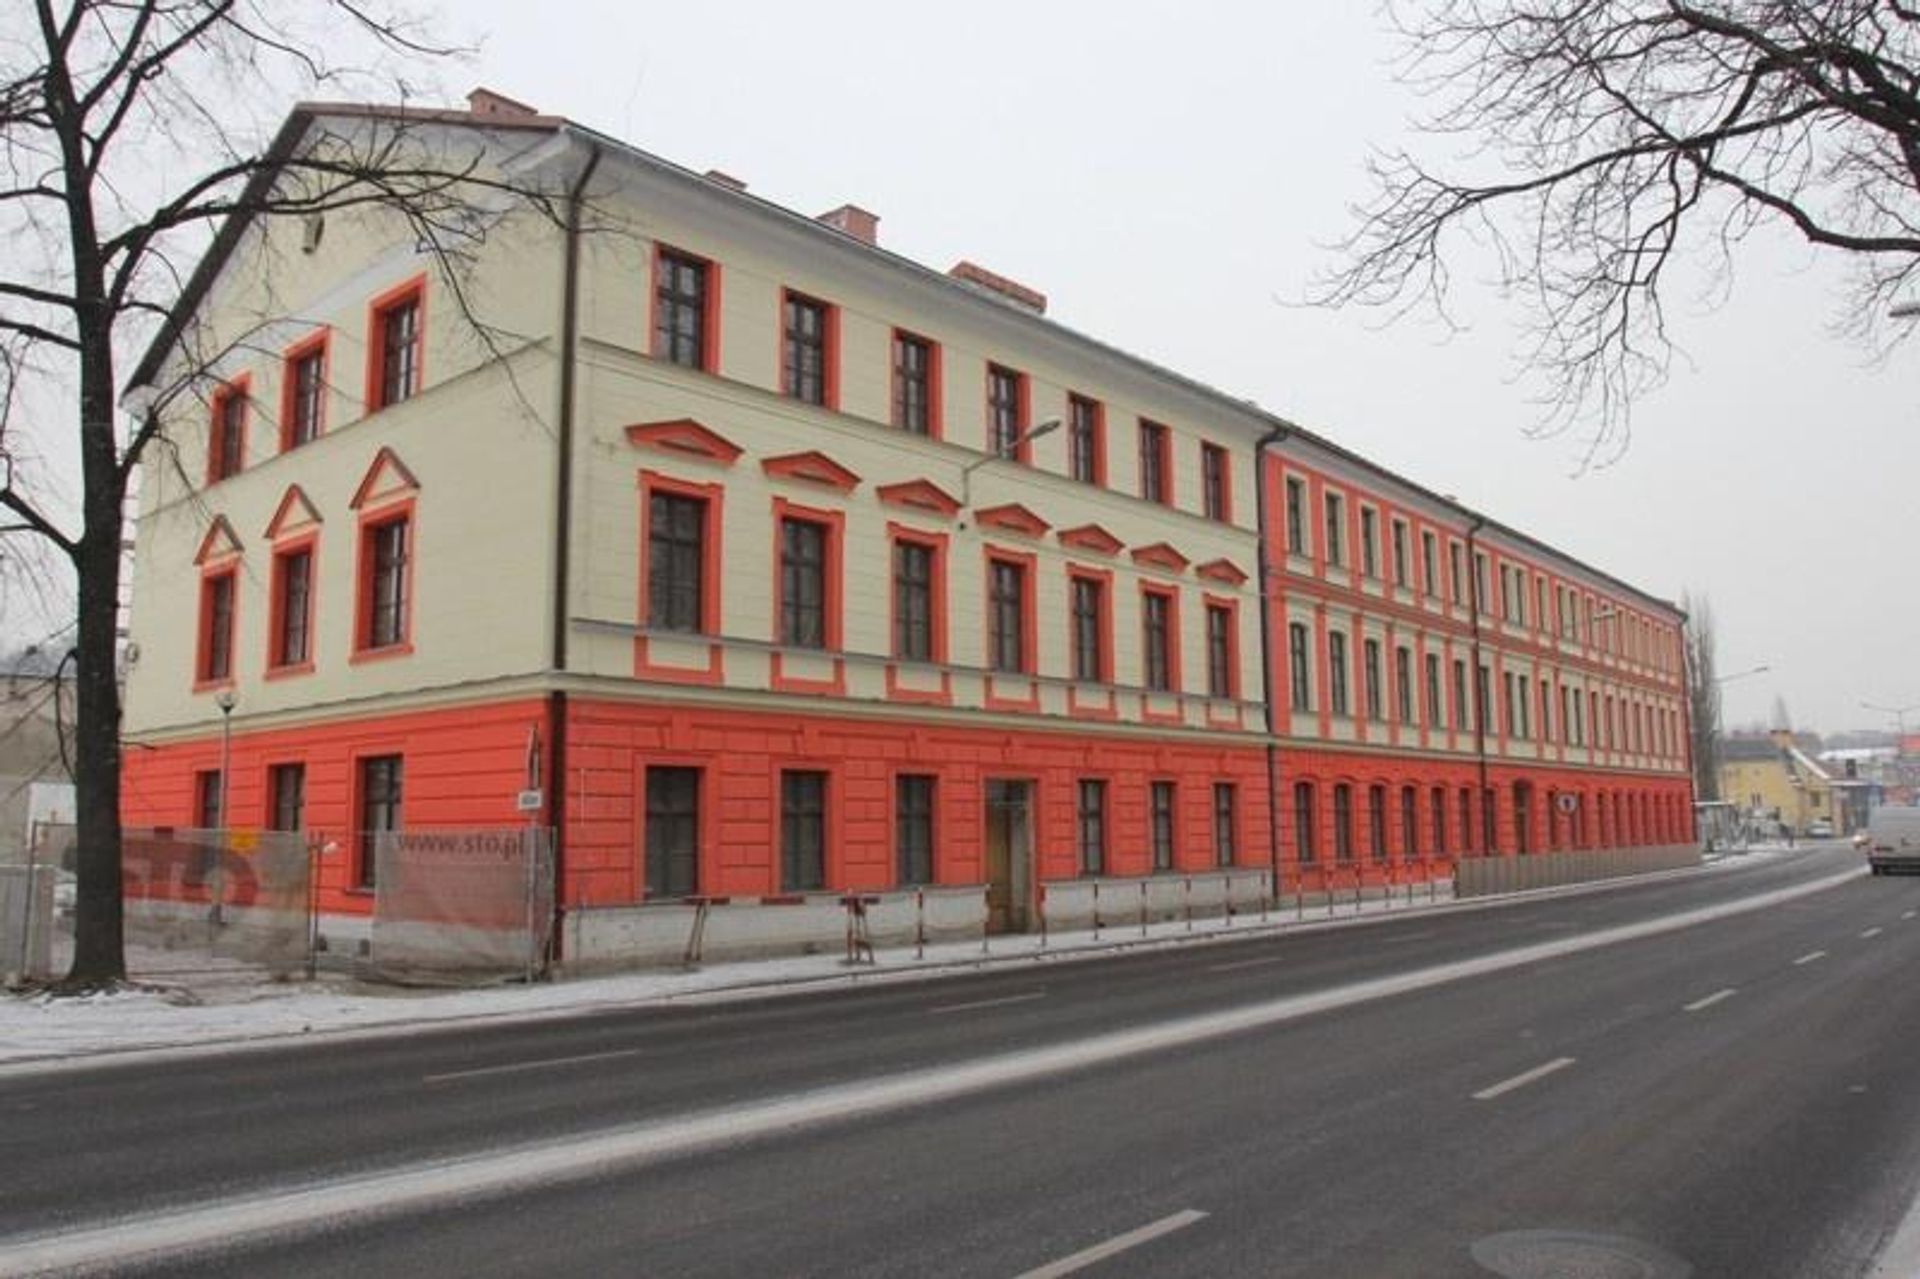  Zabytkowa szkoła zaadaptowana na nowe mieszkania komunalne w Bielsku-Białej